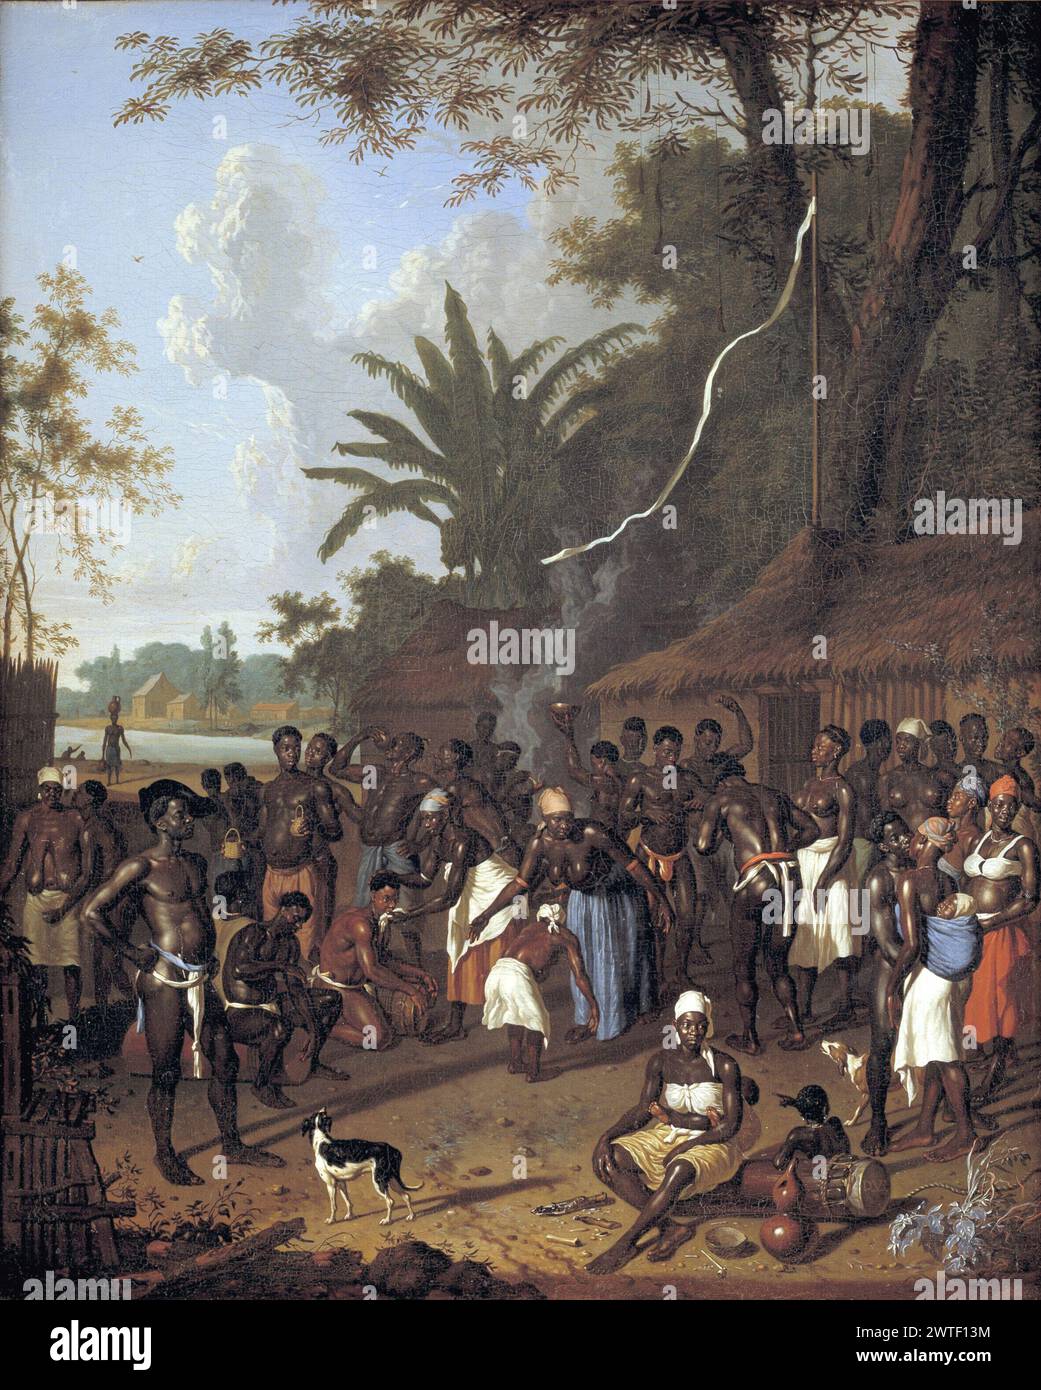 18th-siècle peinture de Dirk Valkenburg montrant les esclaves de plantation pendant une danse de cérémonie. Banque D'Images